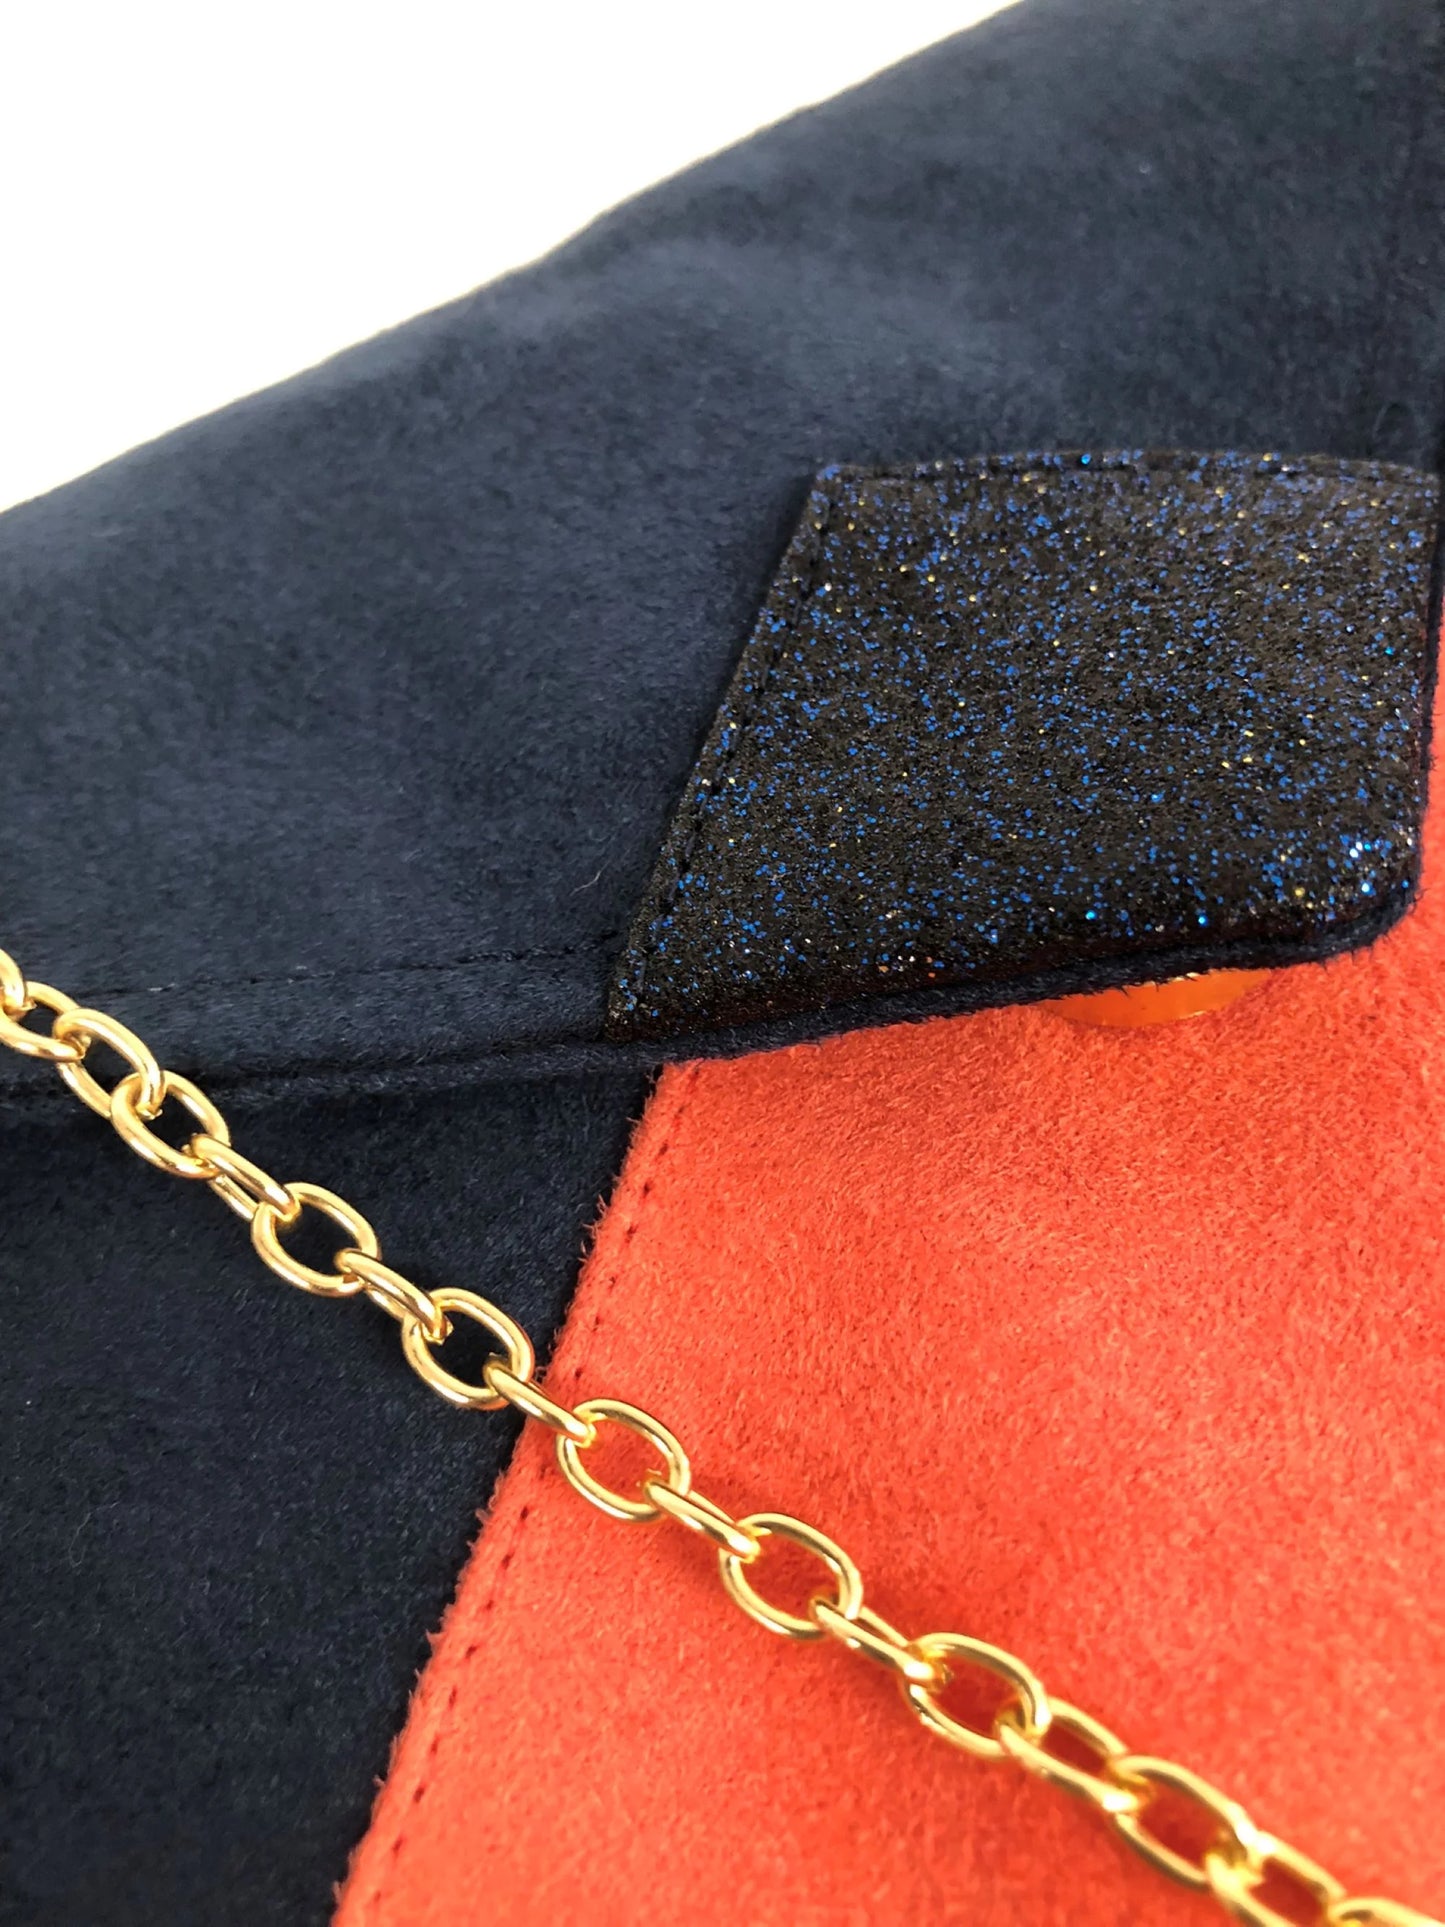 Vue détaillée du sac pochette Isa bleu marine et corail à paillettes bleu marine.